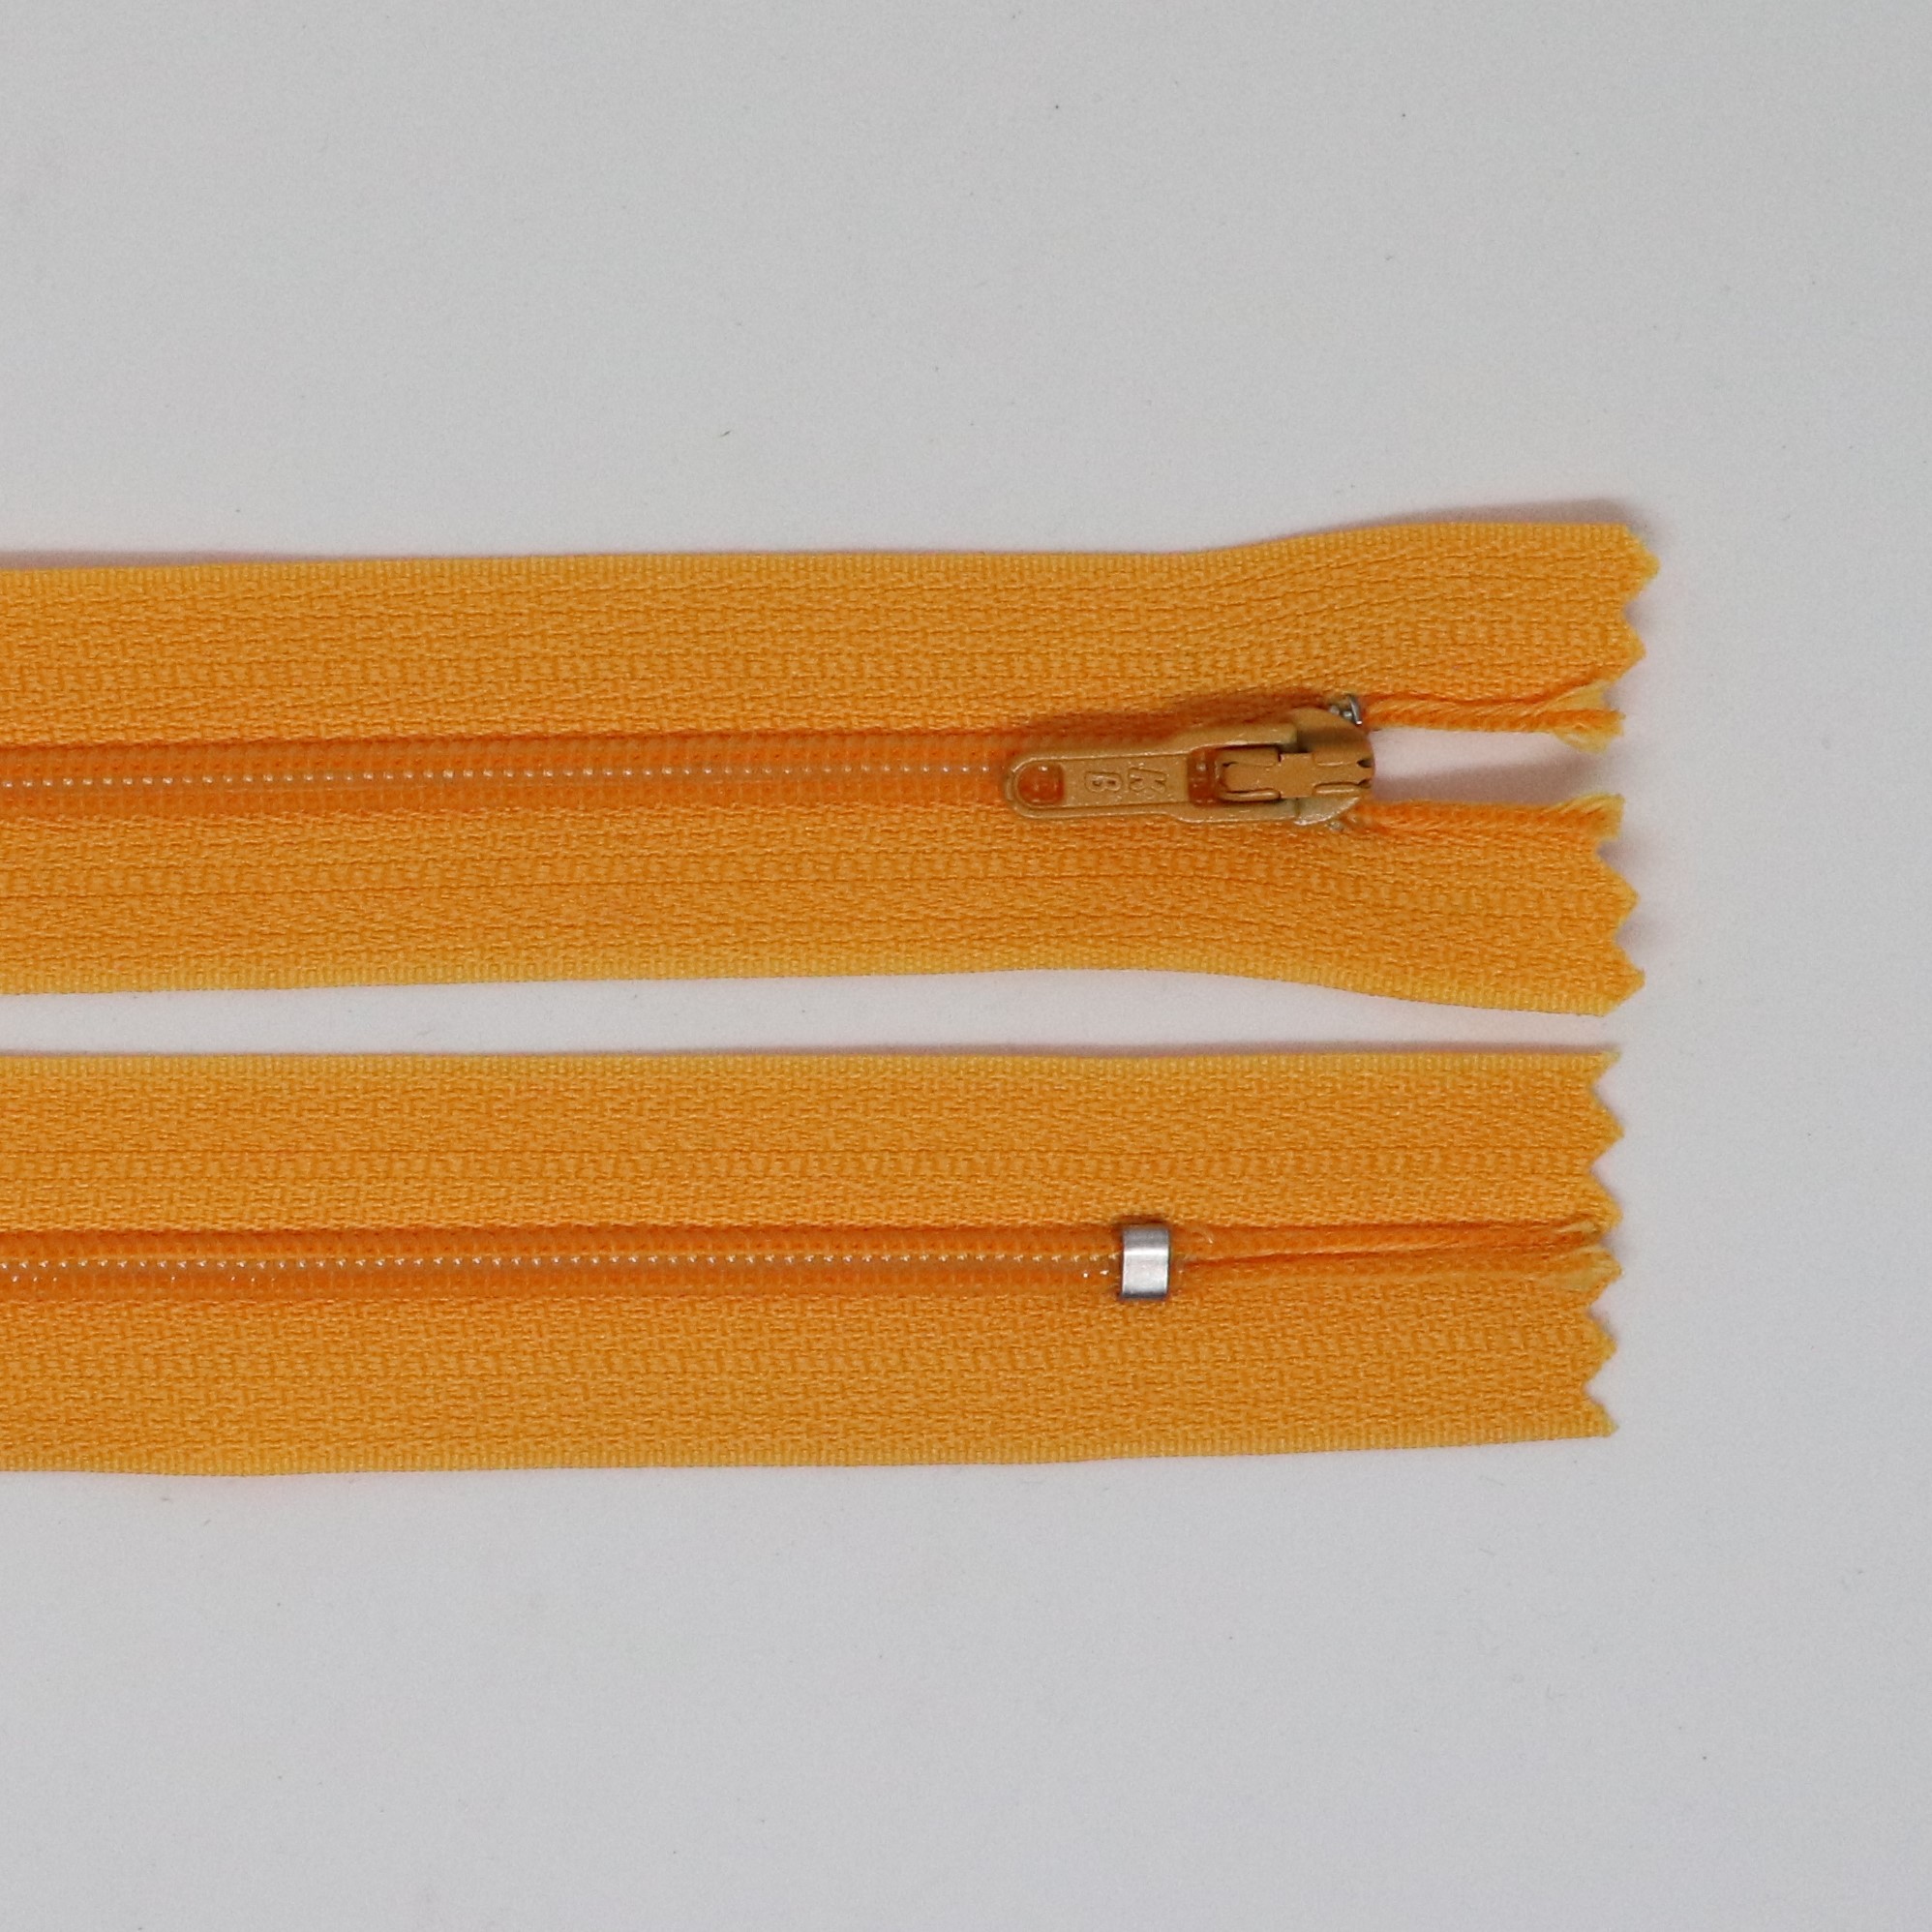 Spirálový zip, šíøe 3 mm, délka 45 cm, oranžová - zvìtšit obrázek